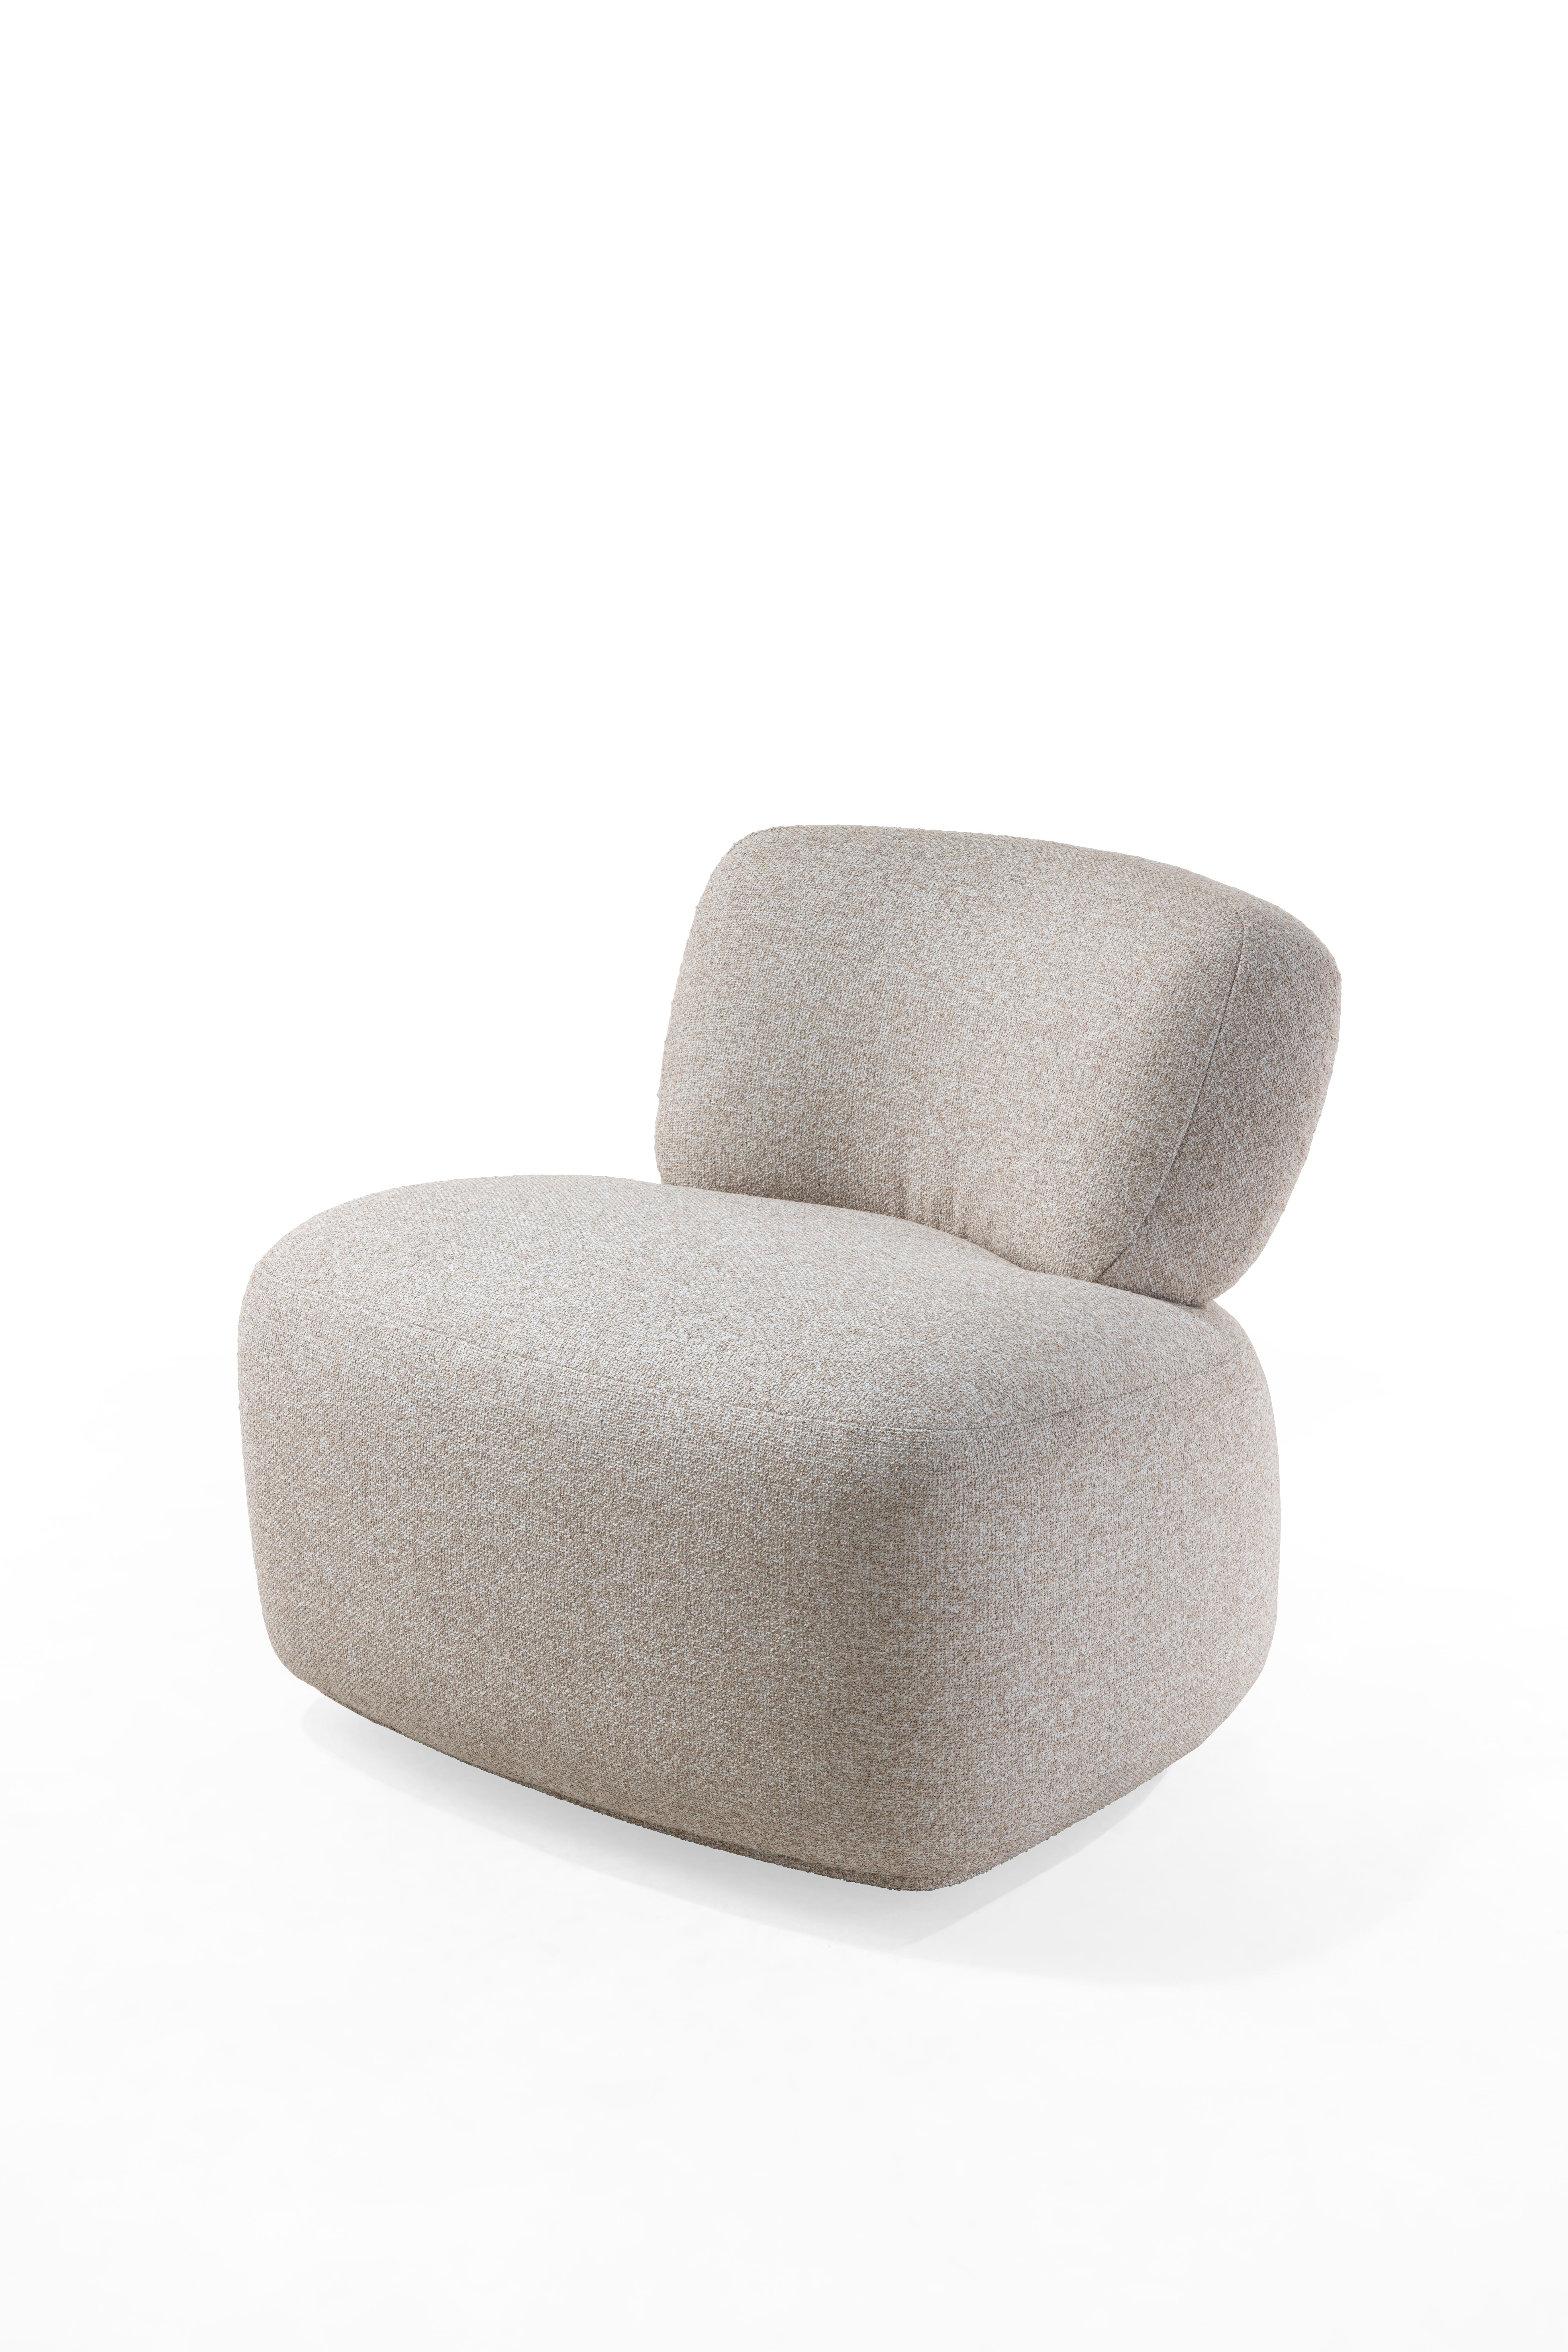 Avec ses courbes douces, ce fauteuil moderne avec base pivotante s'intègre dans n'importe quelle pièce, bureau, chambre ou salon. Le détail en laiton au dos apporte une touche de sophistication, ajoutant du glamour à votre décoration